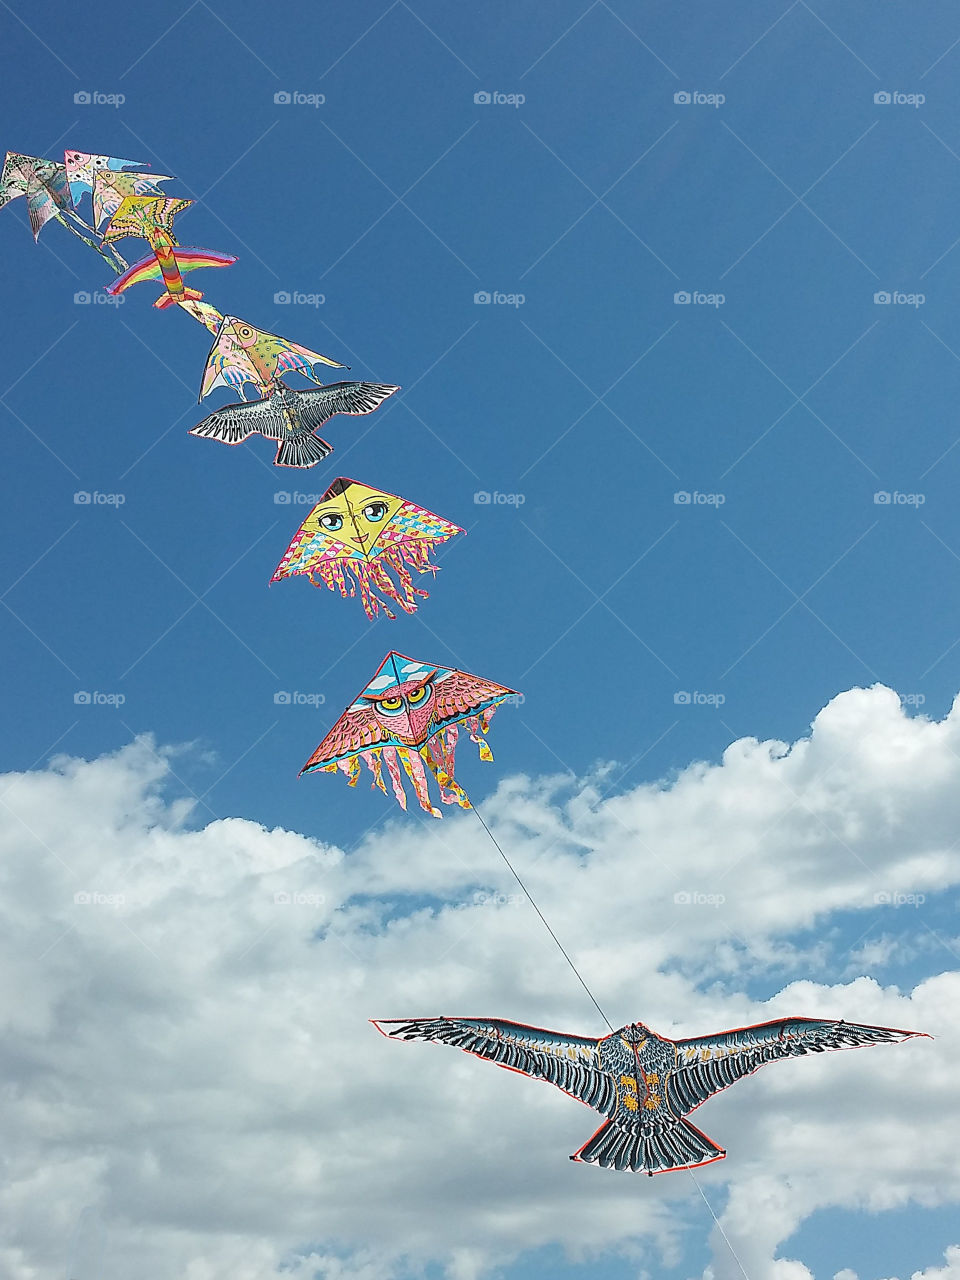 kites in line